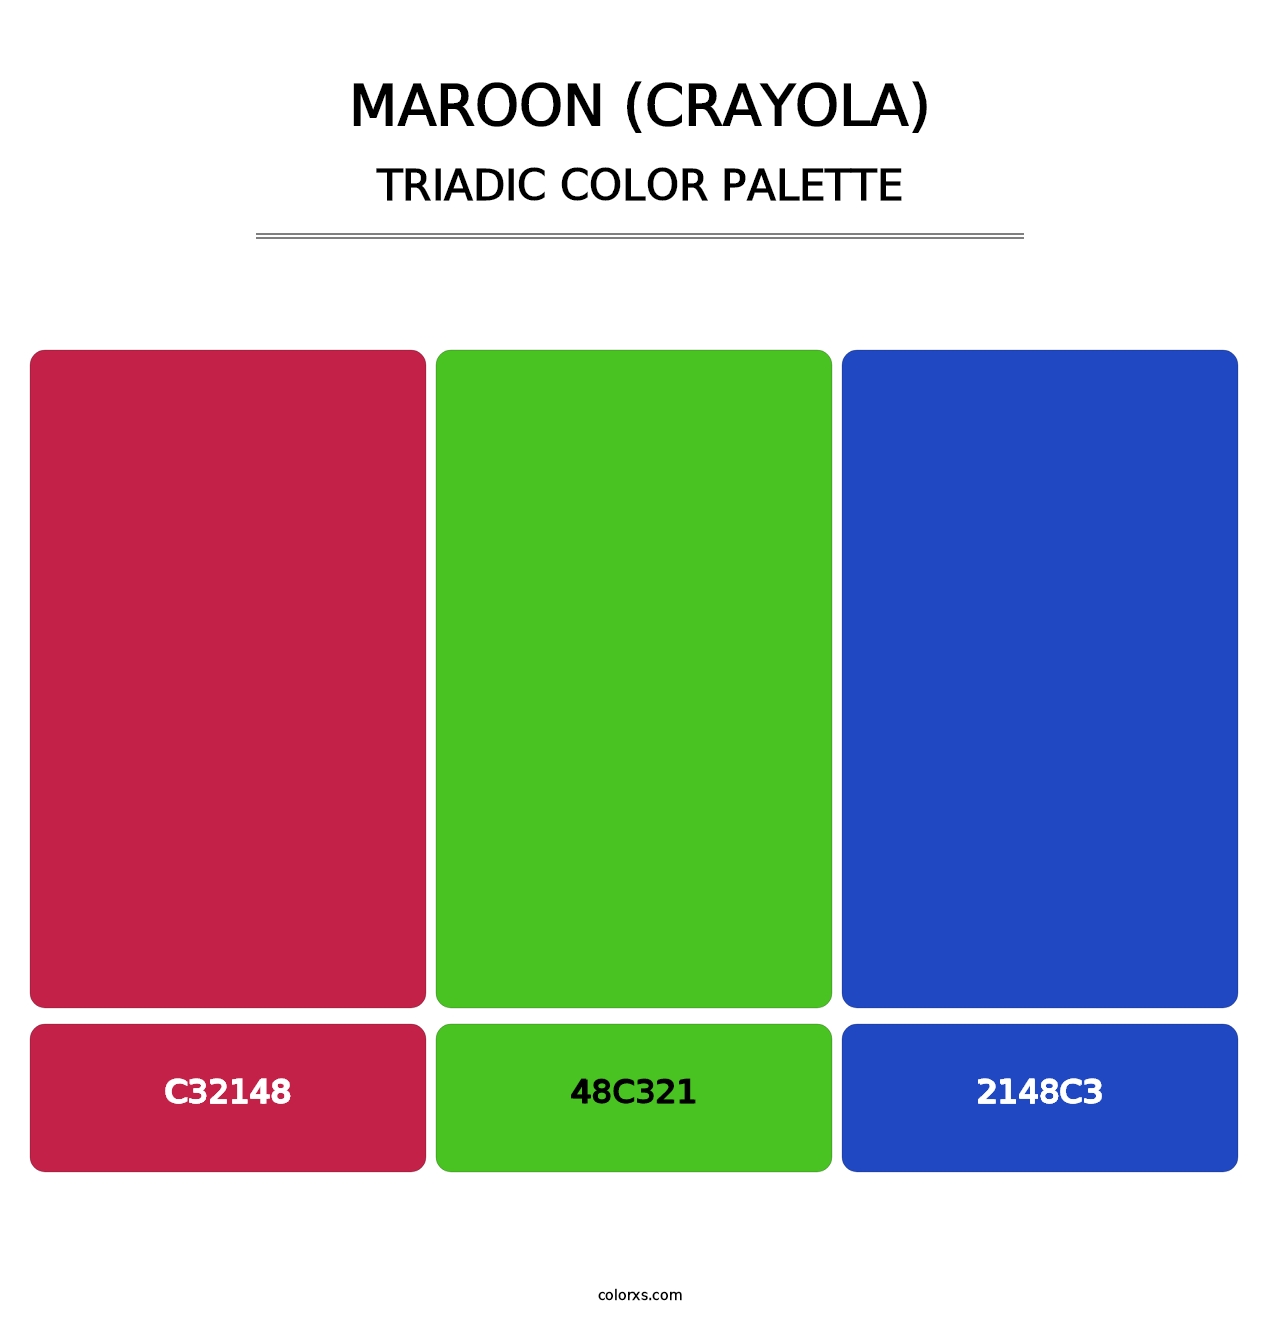 Maroon (Crayola) - Triadic Color Palette